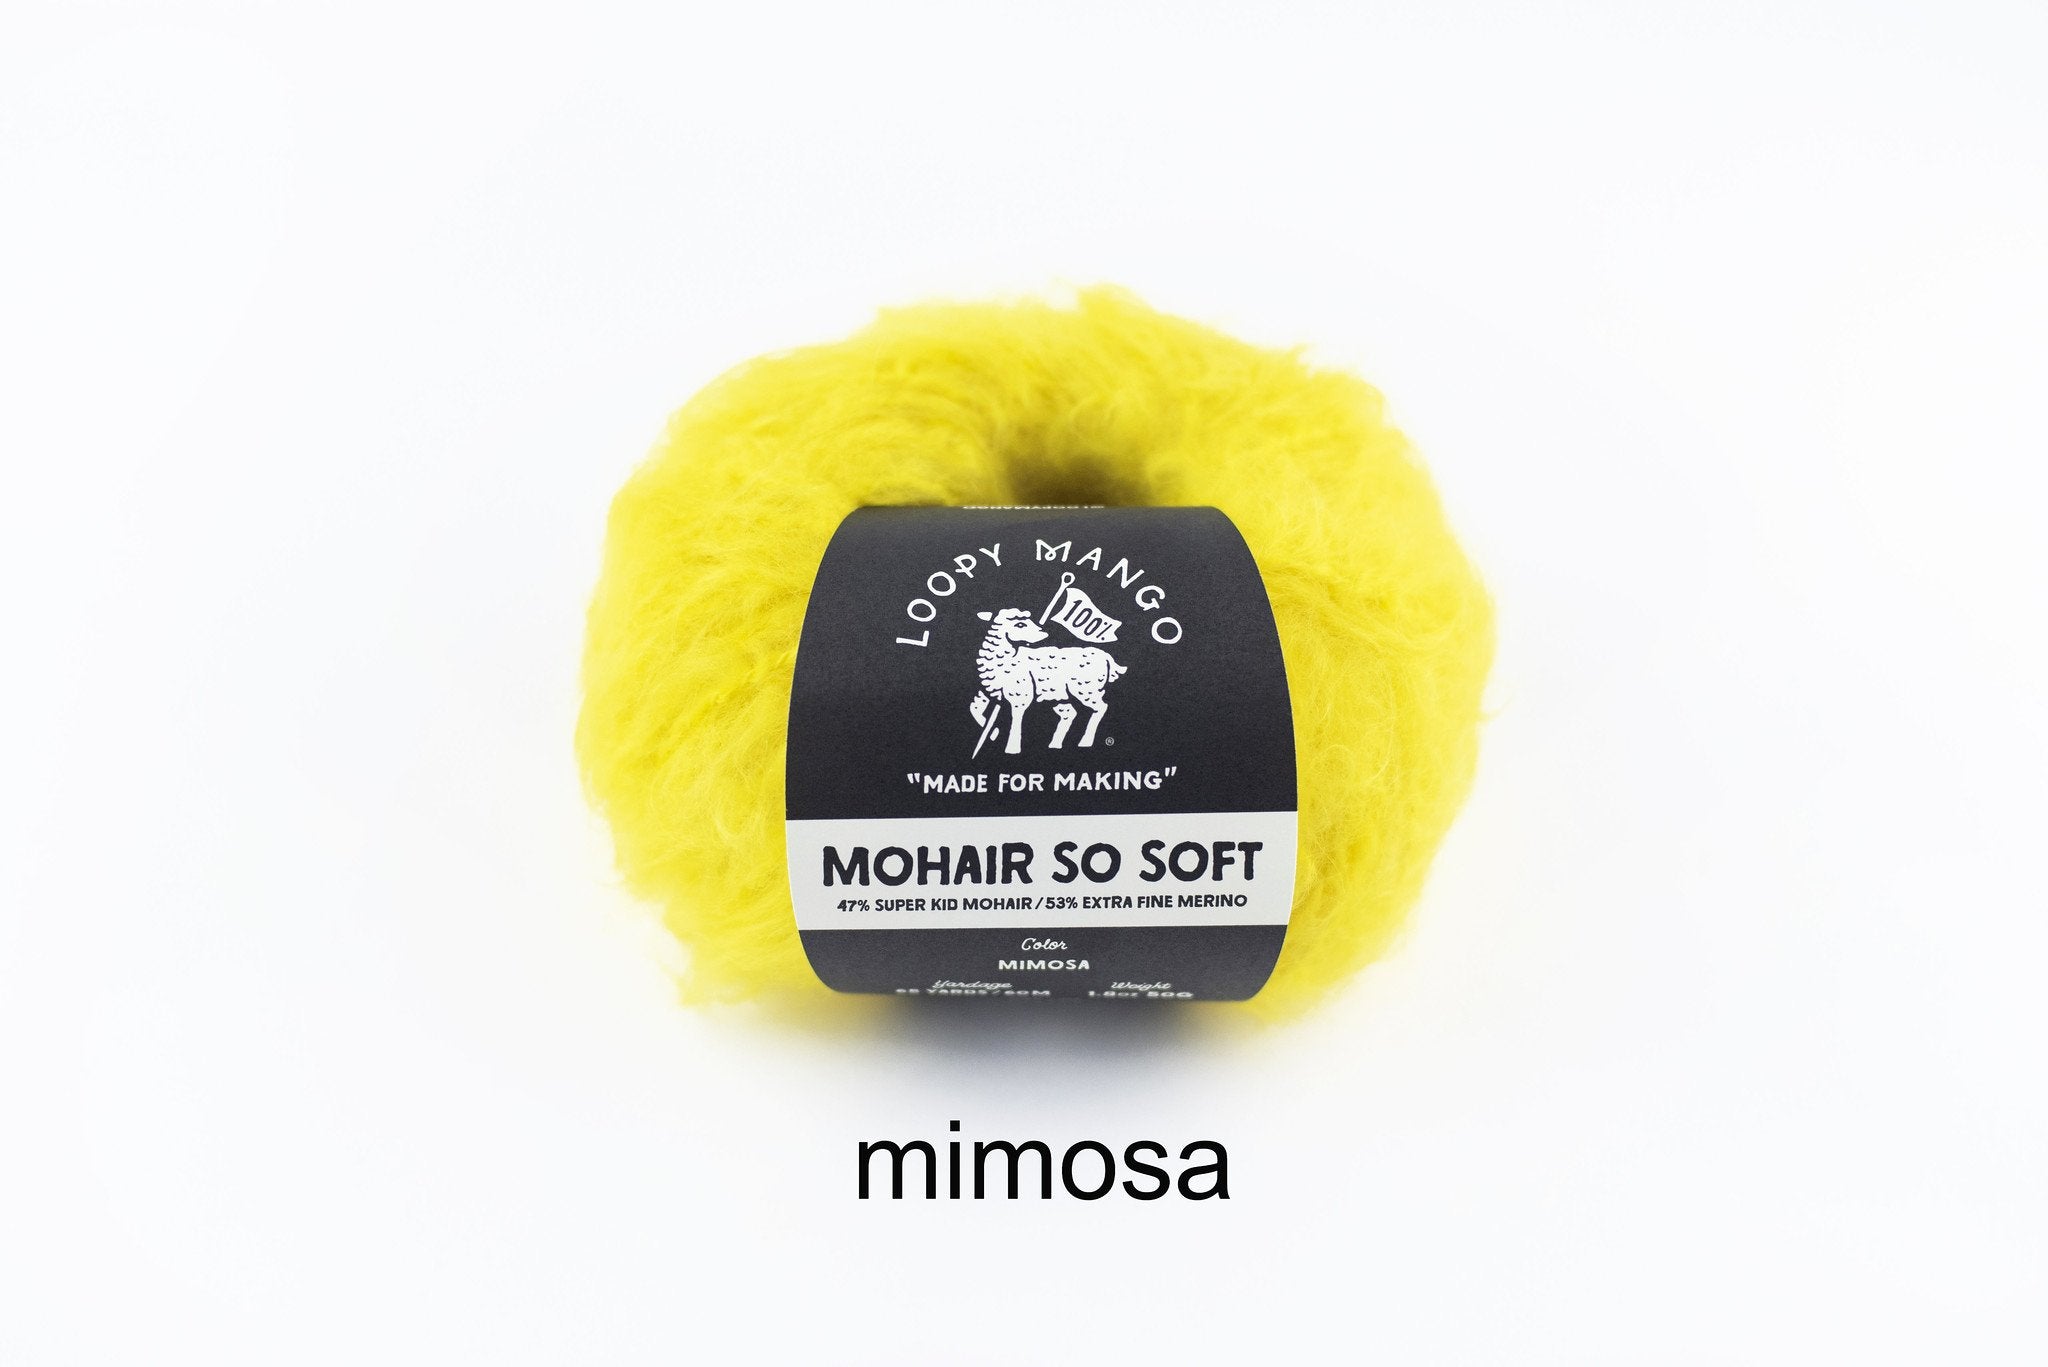 Mimosa_t_1024x1024_2x_32c2c37d-e730-4b3a-978f-c346133cb0df.jpg